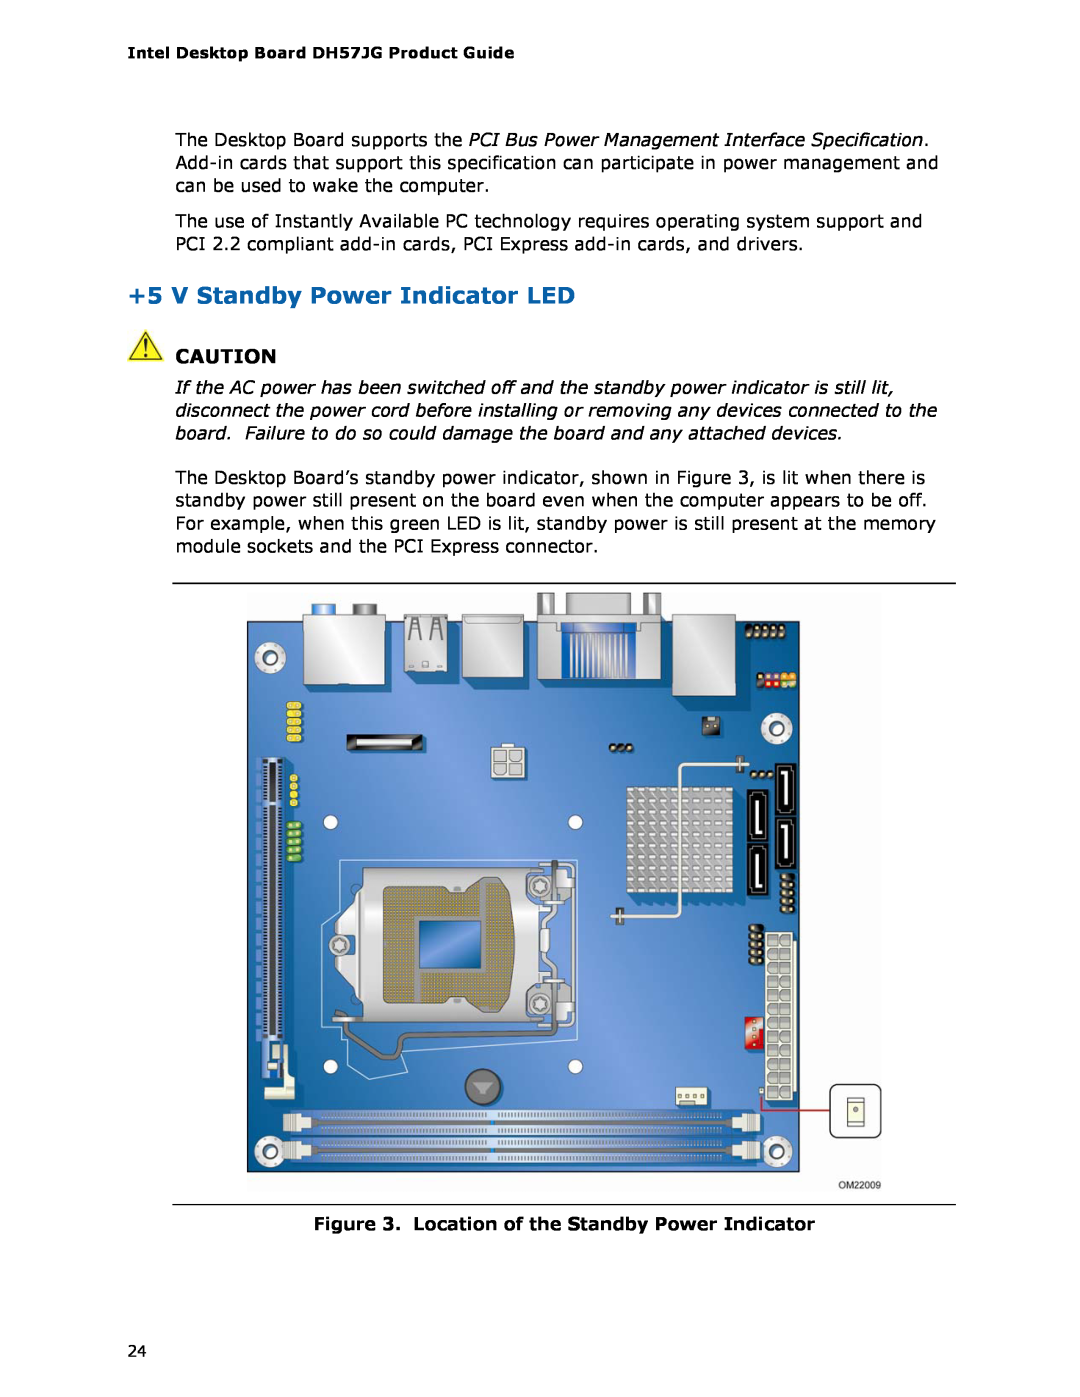 Intel BLKDH57JG manual +5 V Standby Power Indicator LED, Location of the Standby Power Indicator 